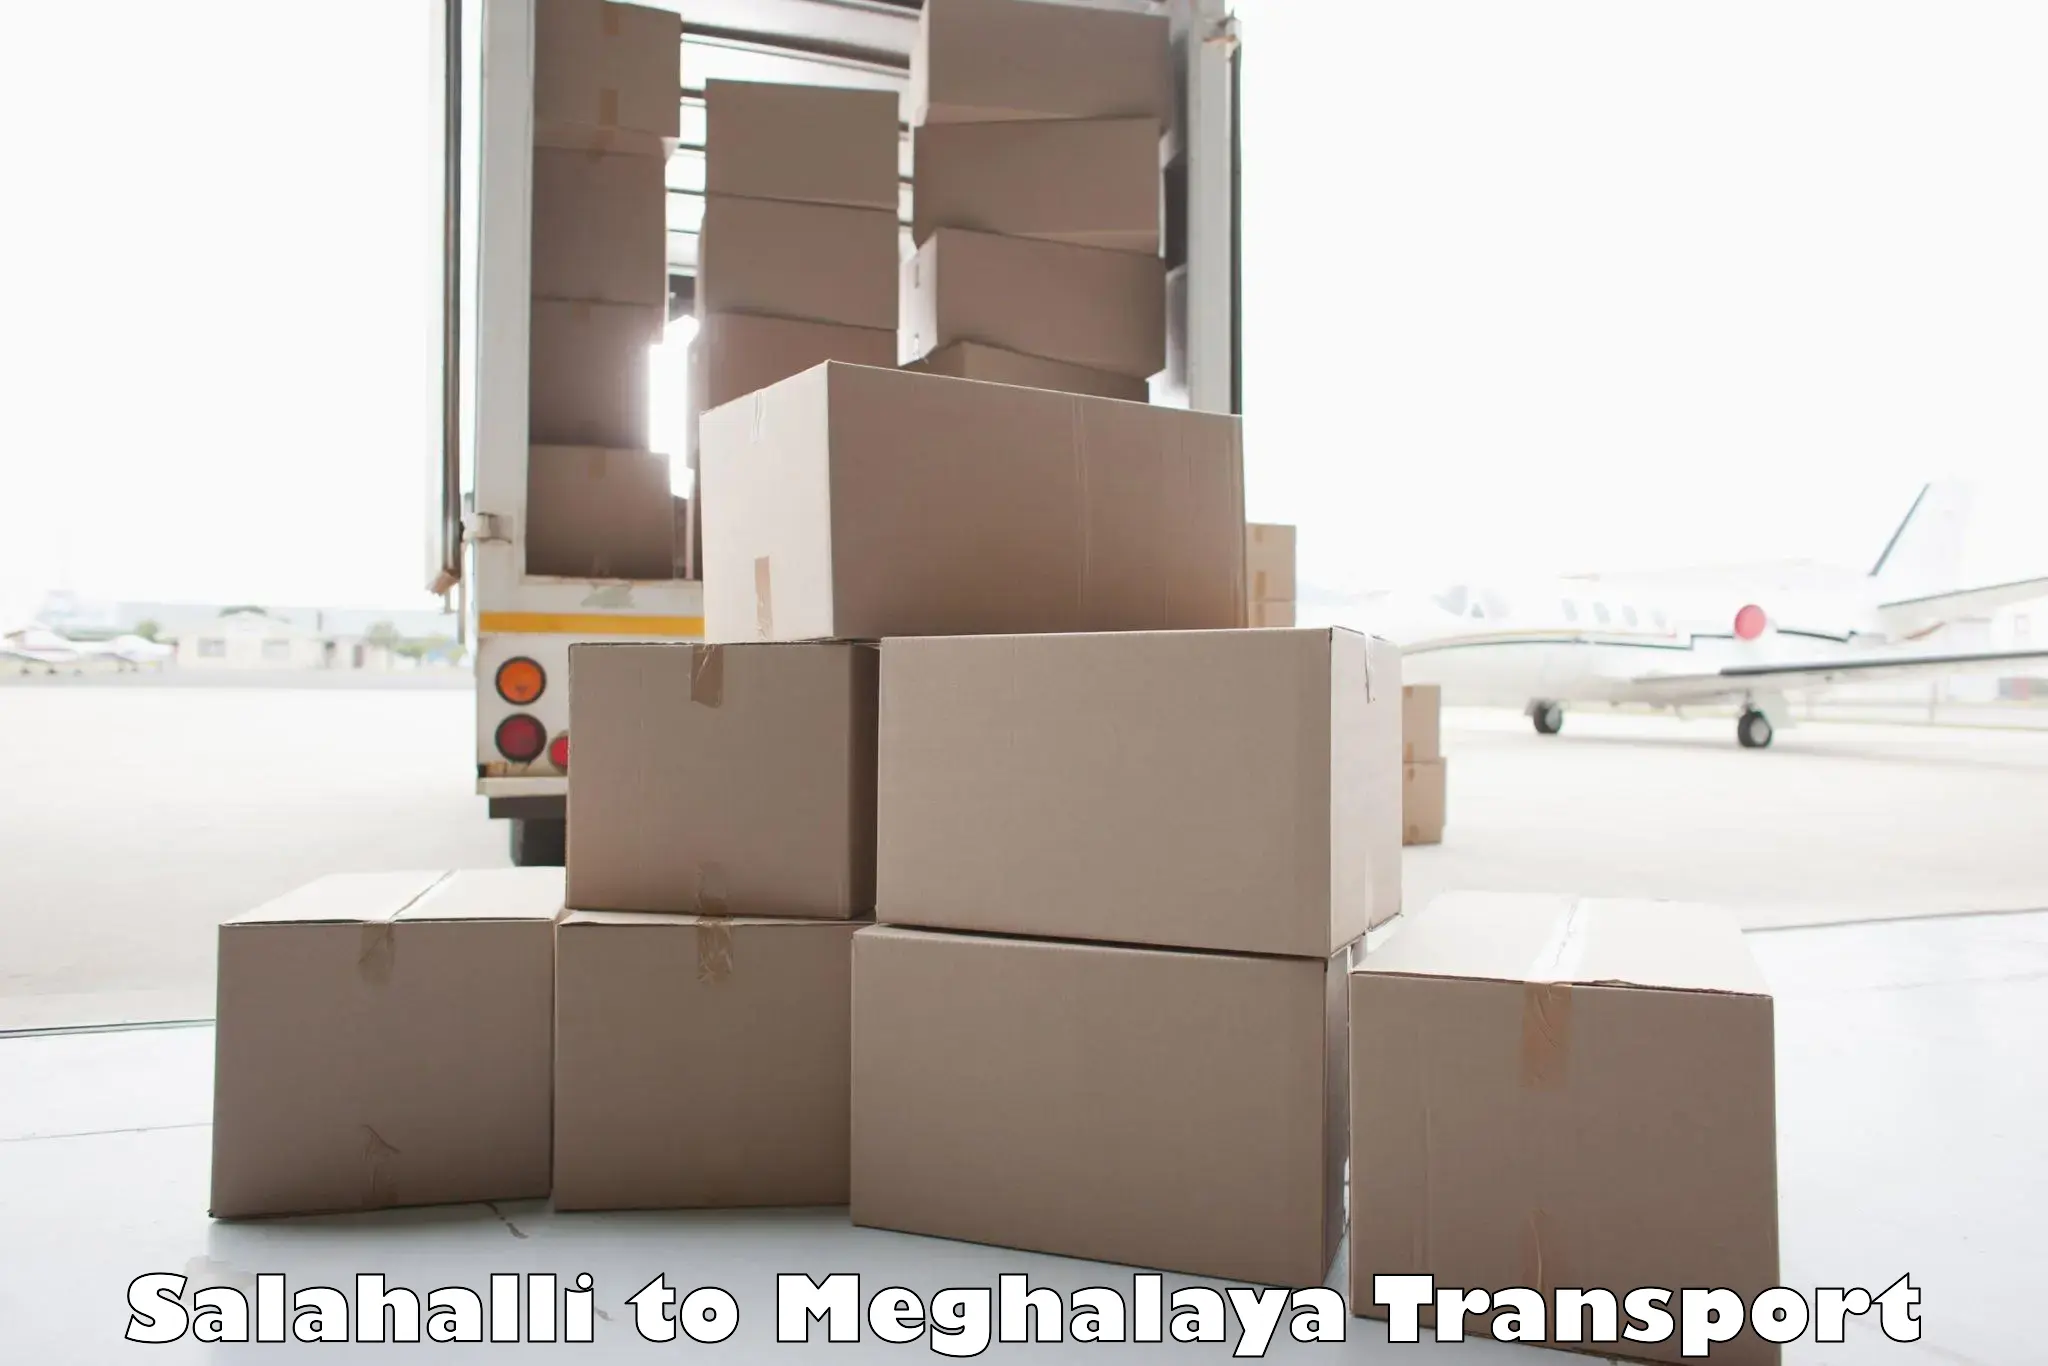 Air cargo transport services Salahalli to Meghalaya